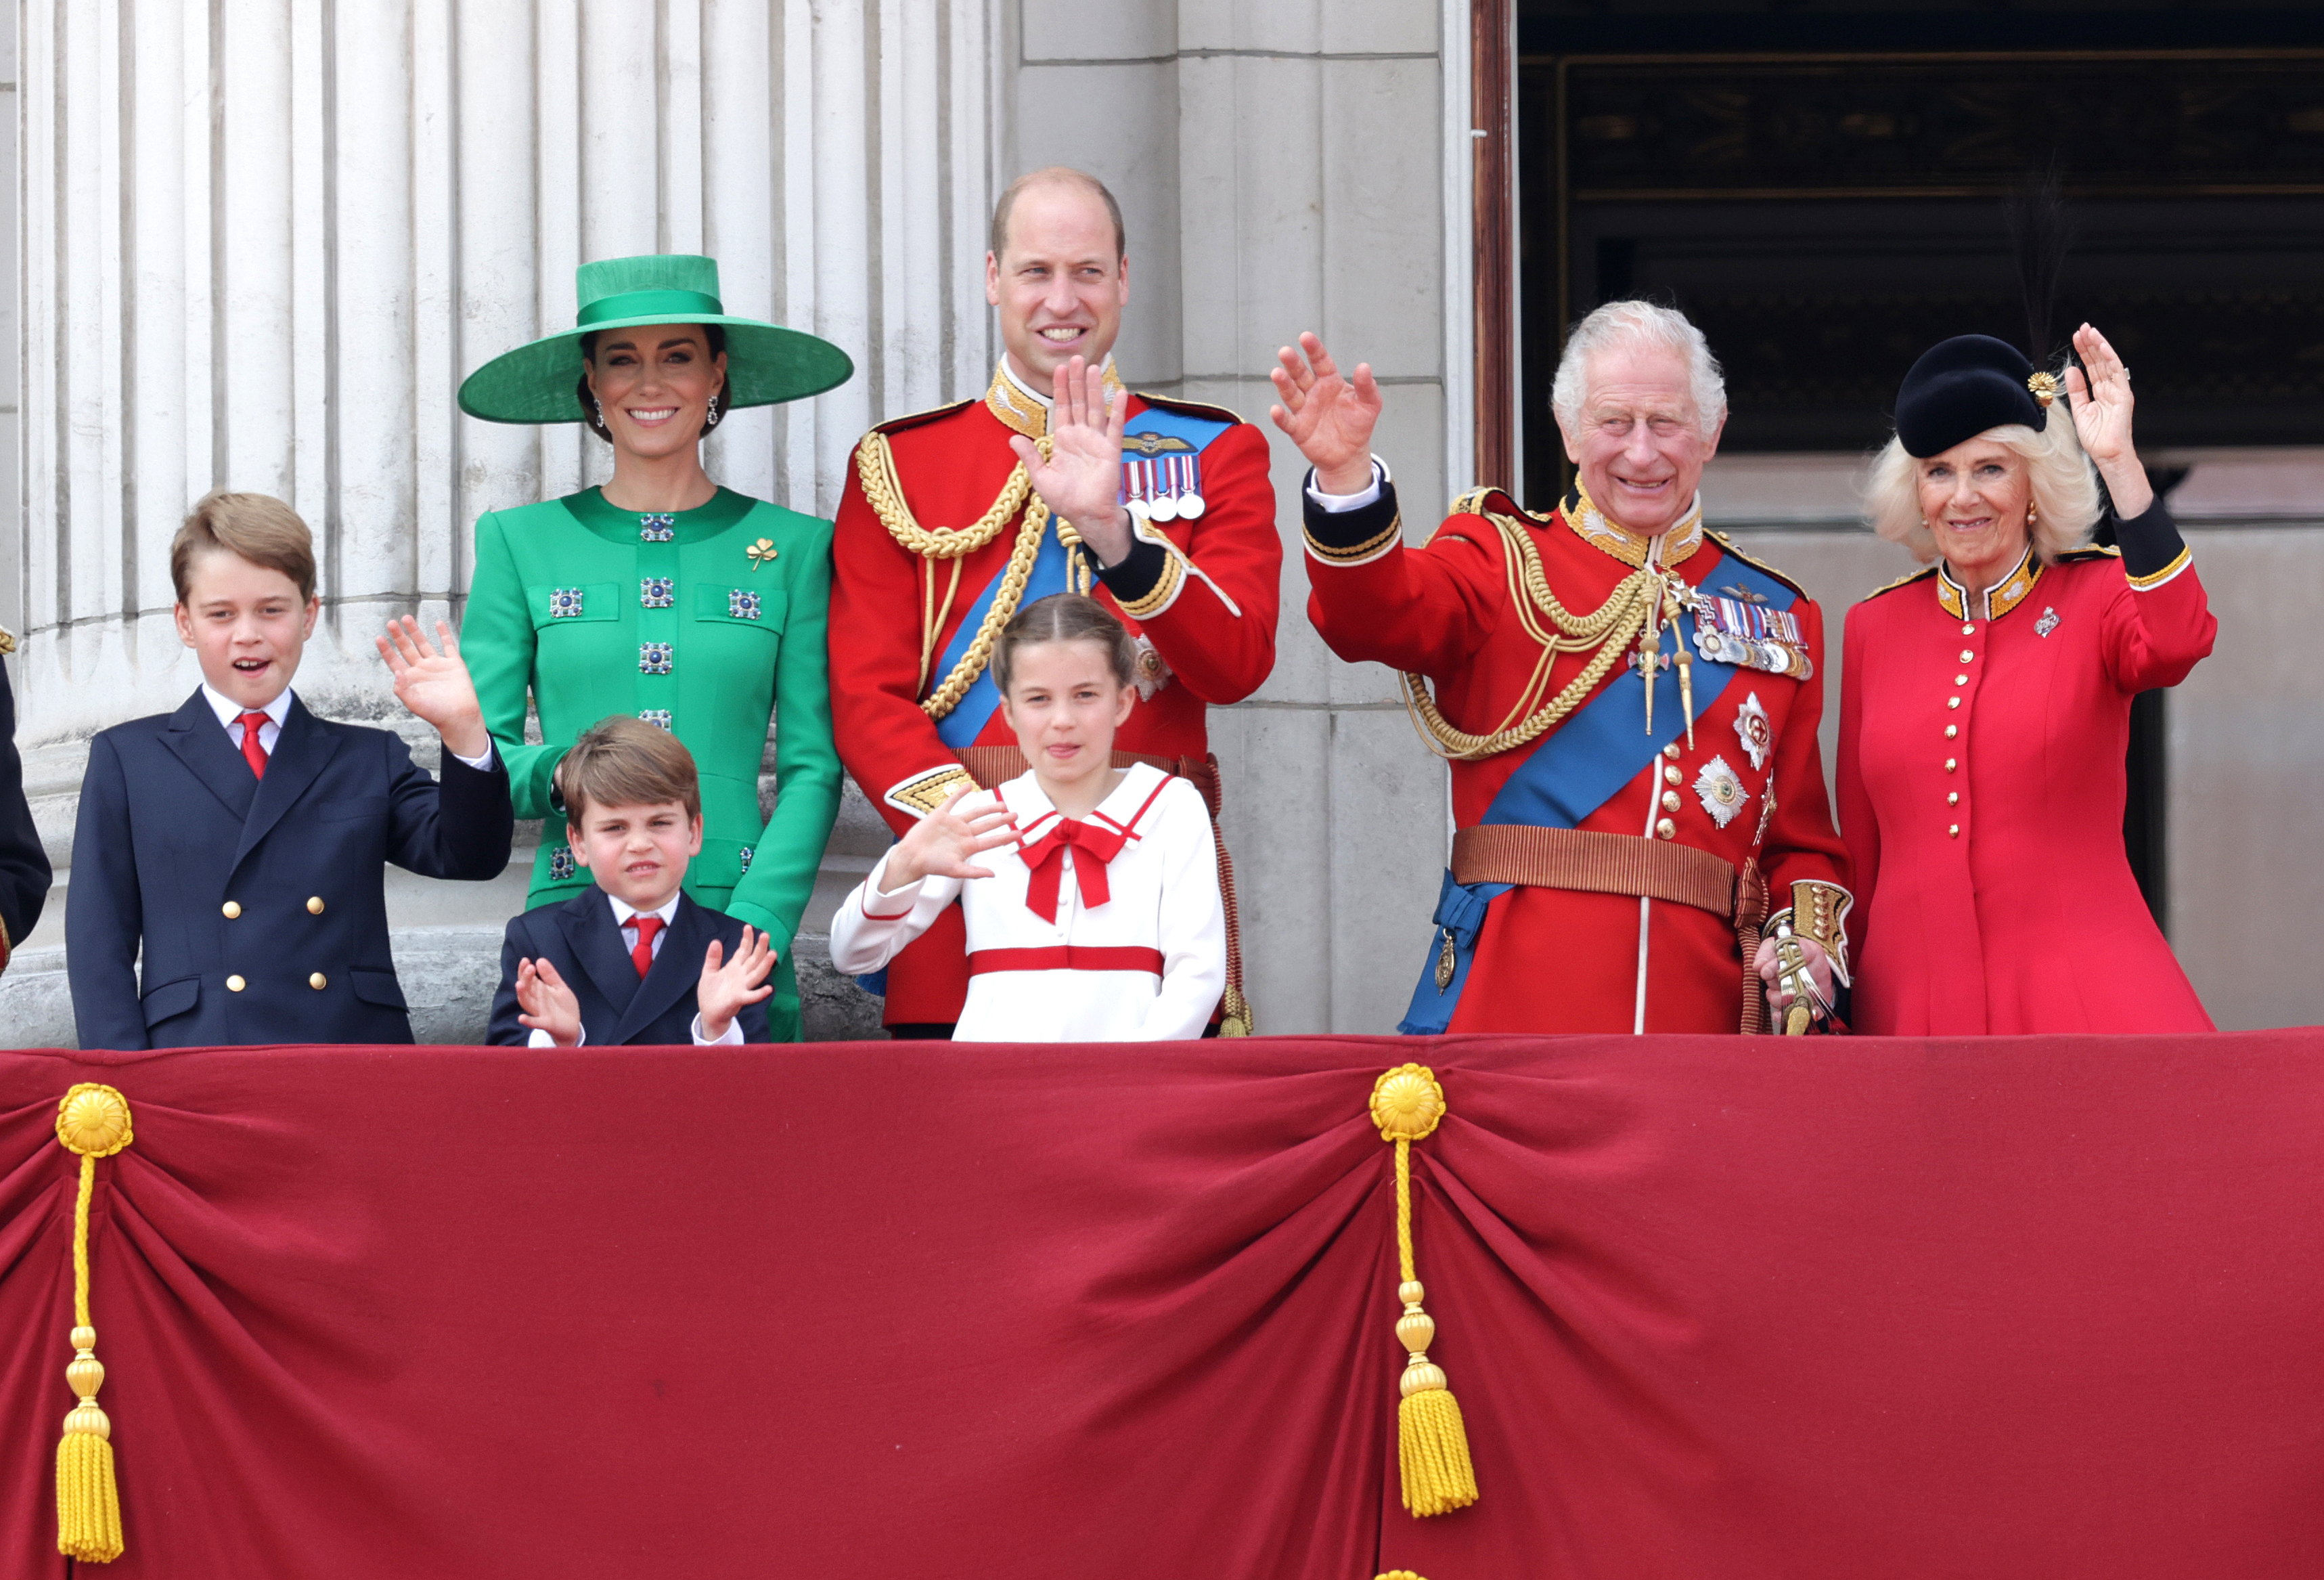 Le prince Louis, la princesse Charlotte, le prince George, la princesse Catherine, le prince William, la reine Camilla et le roi Charles III sur le balcon du palais de Buckingham lors du Trooping the Colour, le 17 juin 2023 à Londres, en Angleterre | Source : Getty Images